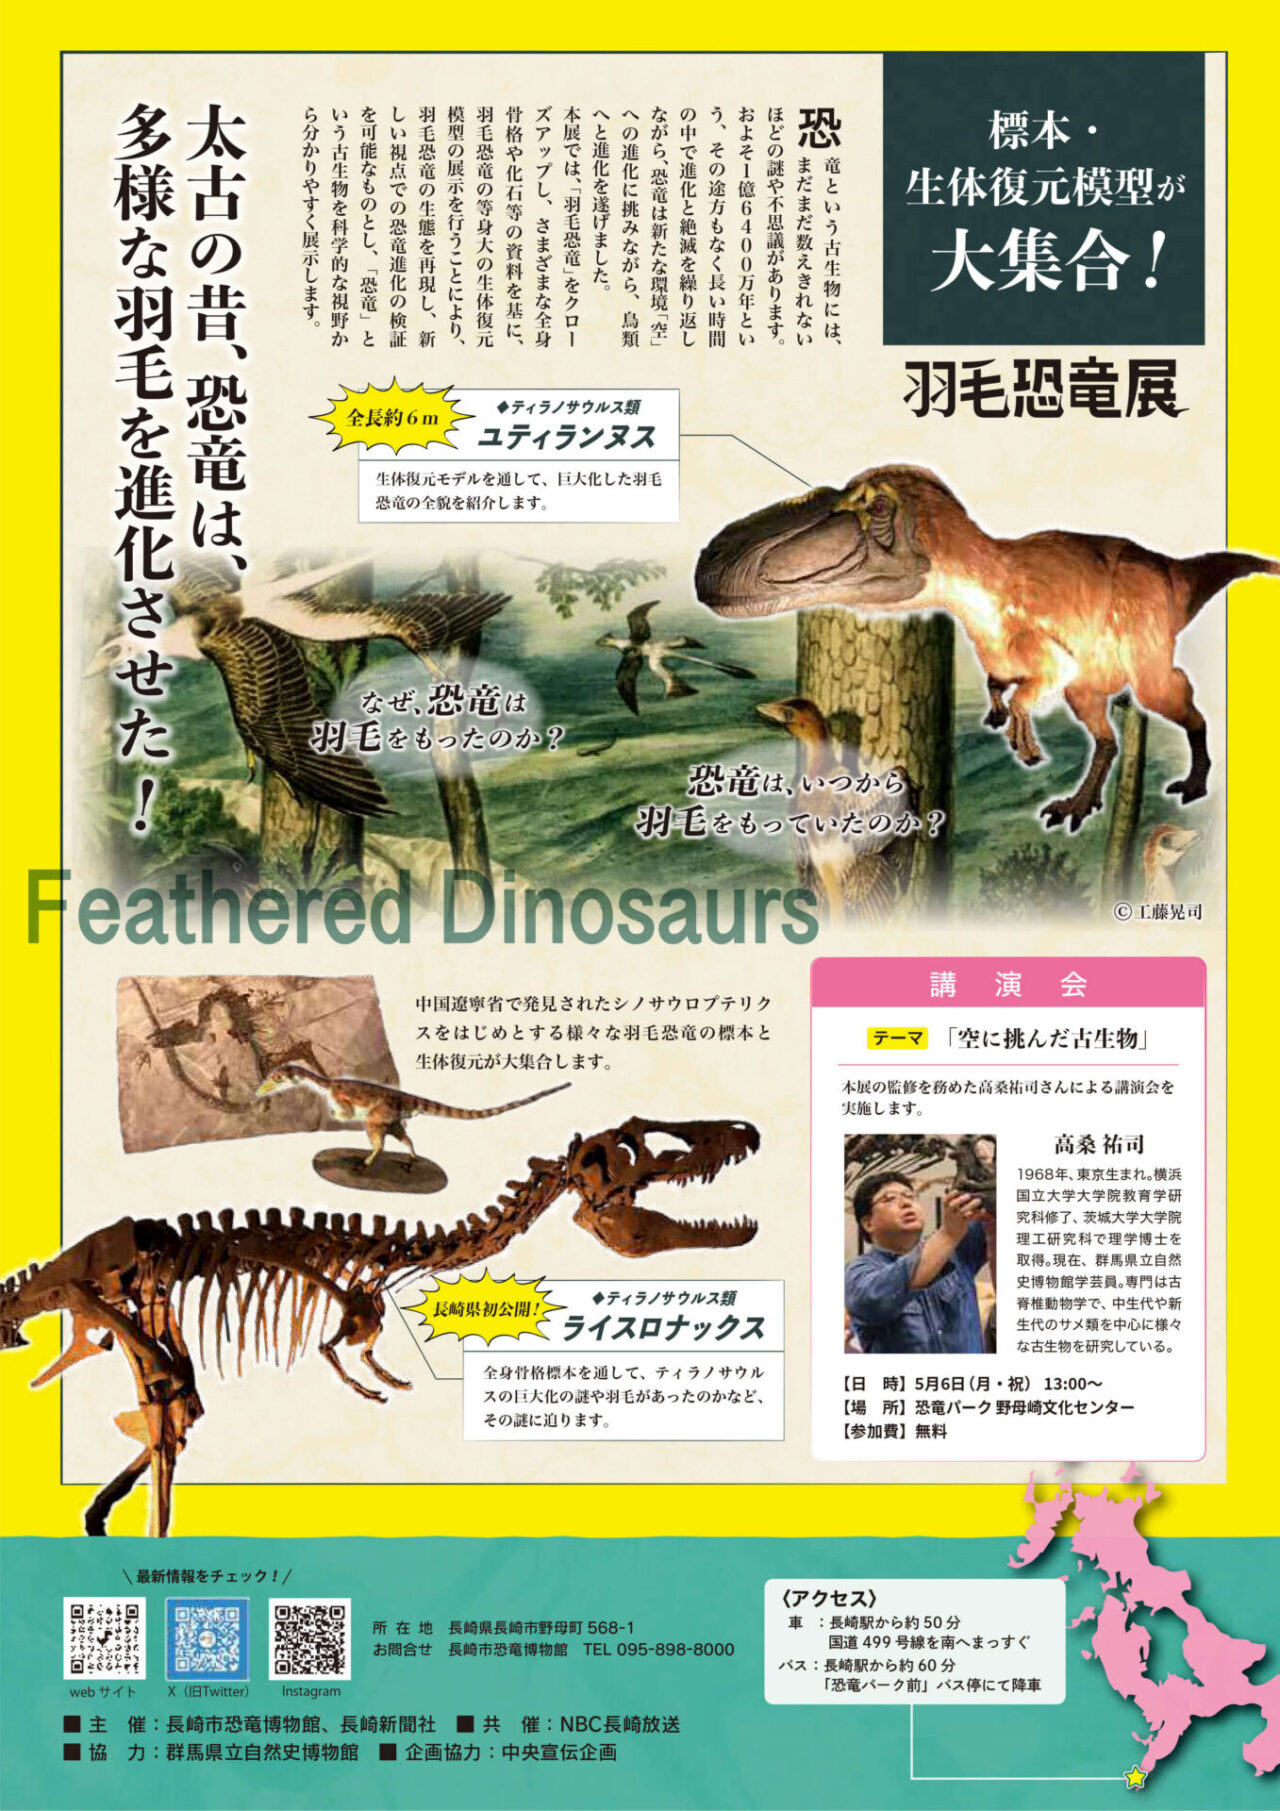 【羽毛恐竜展】＠長崎市恐竜博物館